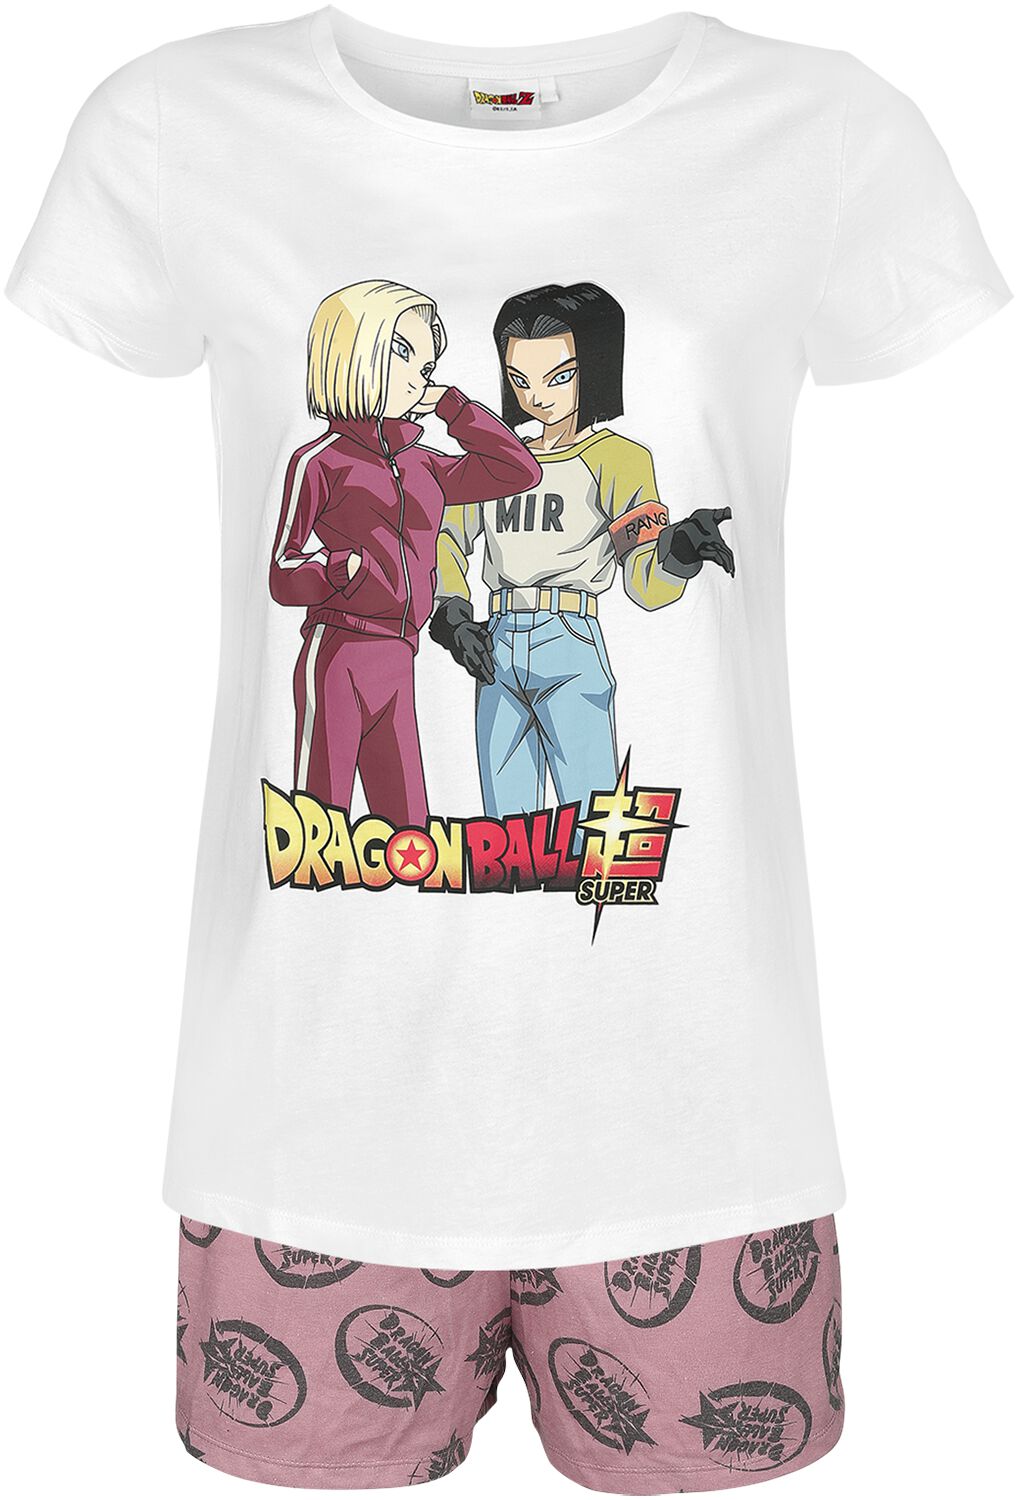 Dragon Ball - Gaming Schlafanzug - Super - Androids - S bis 3XL - für Damen - Größe S - weiß/rosa  - EMP exklusives Merchandise!